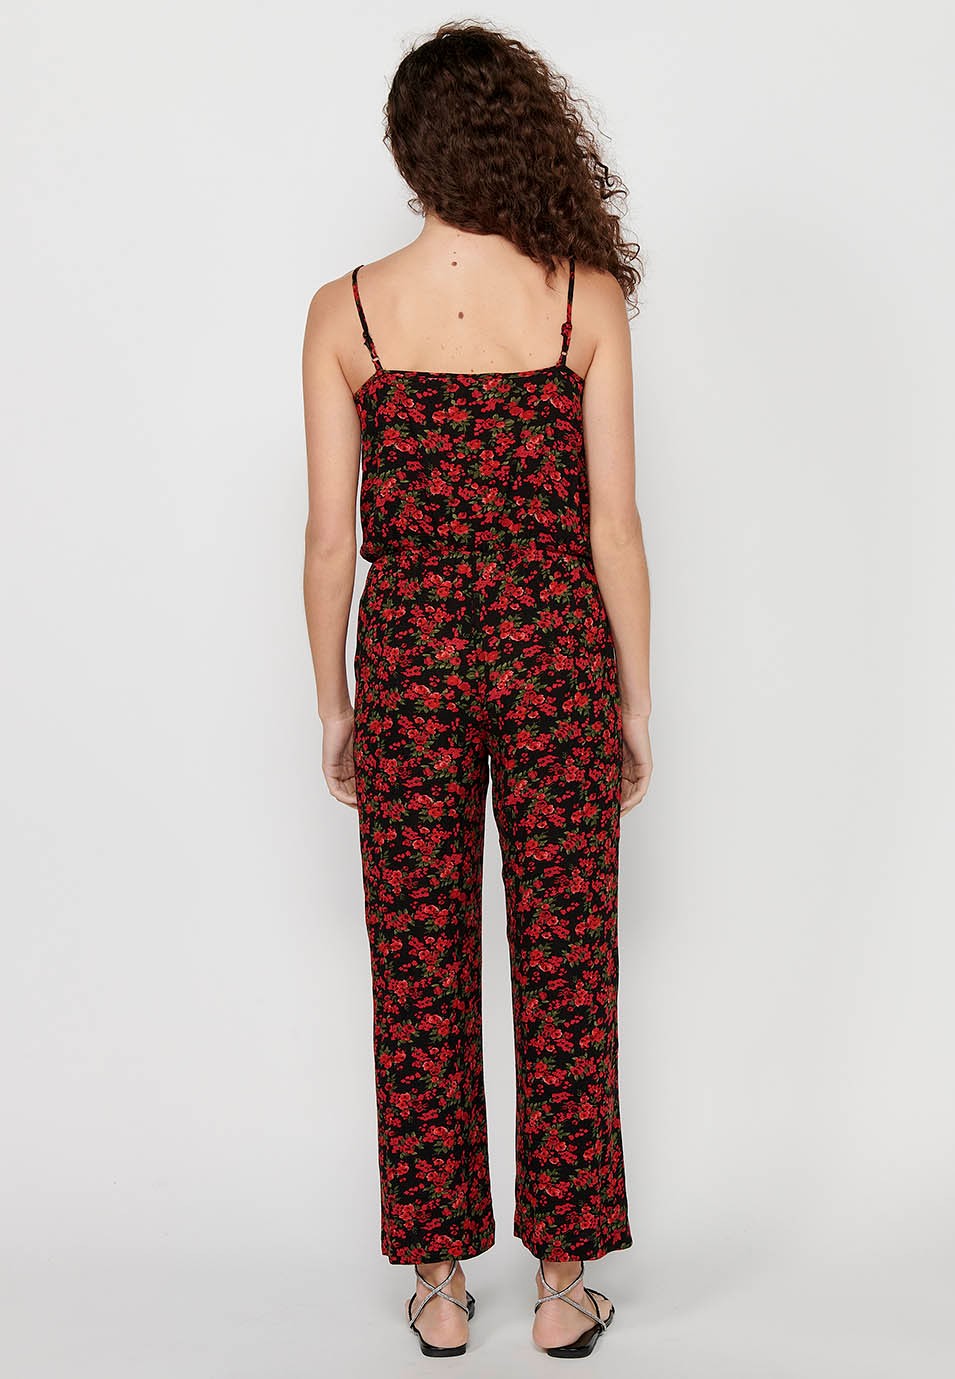 Pantalon habillé long à bretelles réglables avec taille caoutchoutée et imprimé floral rouge pour Femme 7